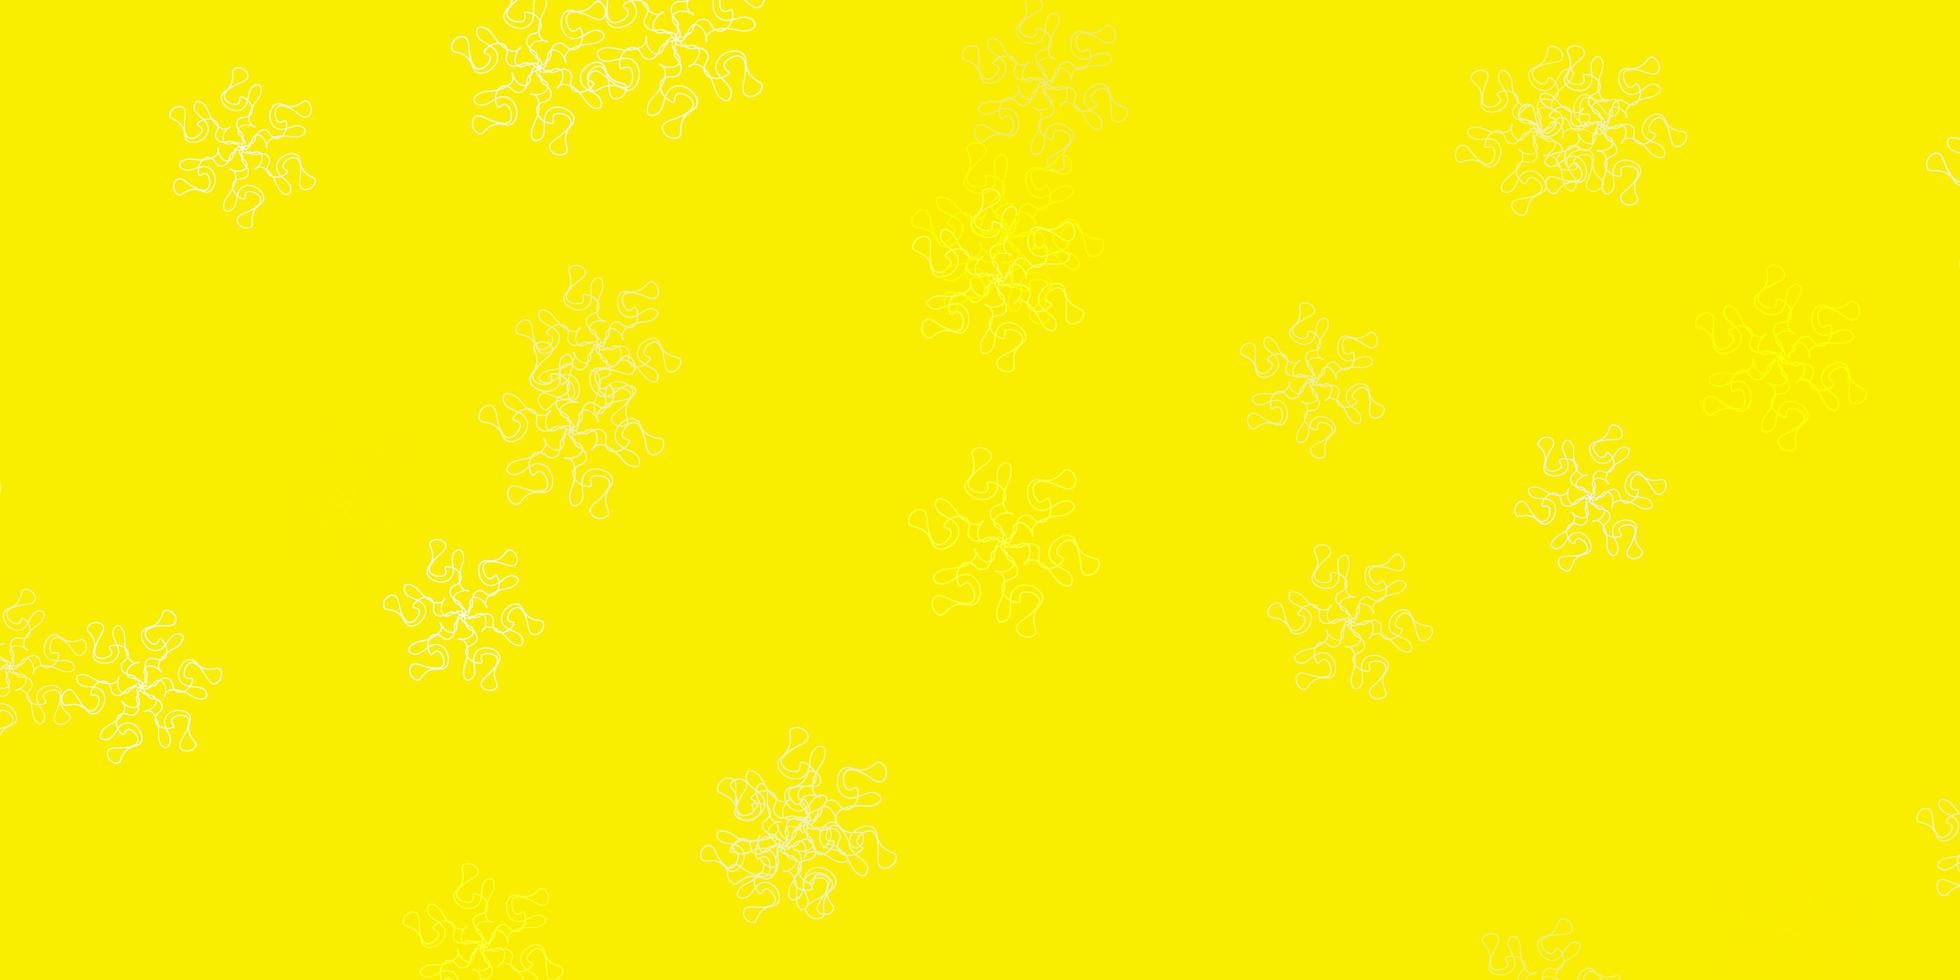 ljus gul vektor naturlig layout med blommor.